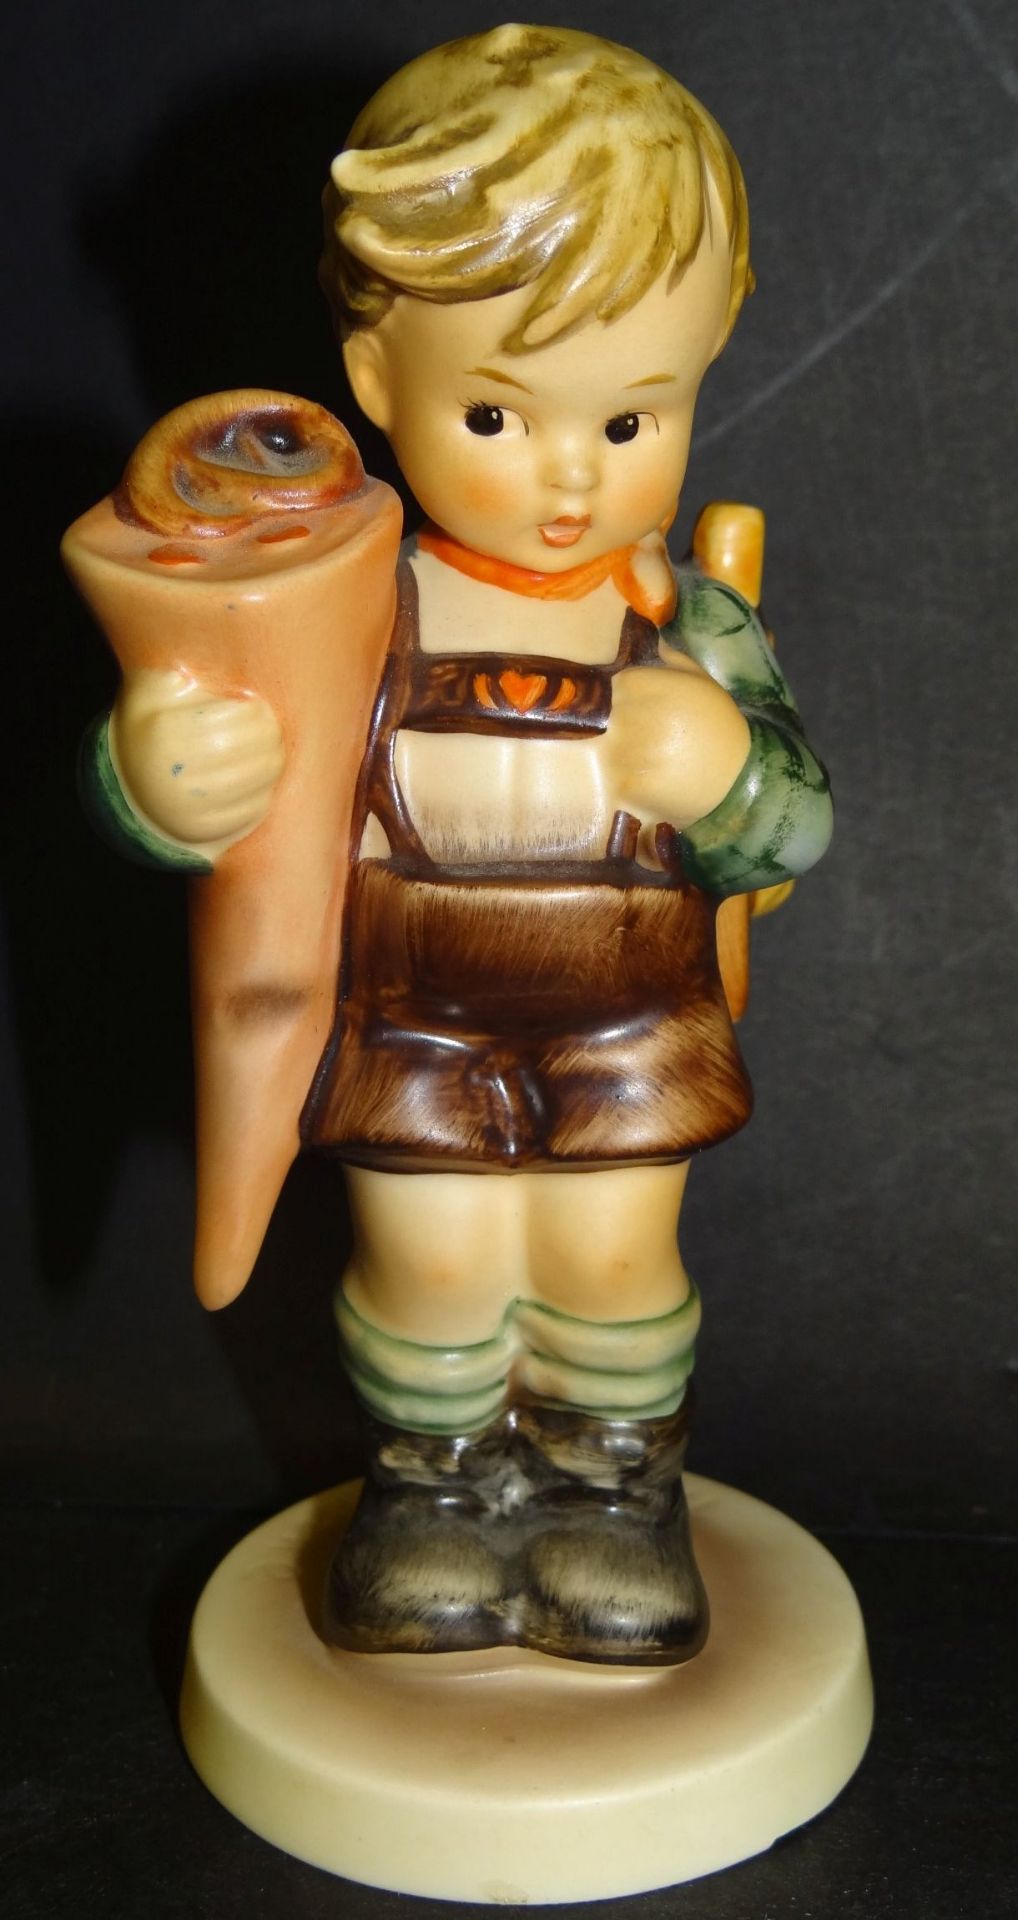 Hummel-Figur "Erster Schulgang, Junge" bemalt, H-14 cm, Unterseite Standring mit Abplatzer